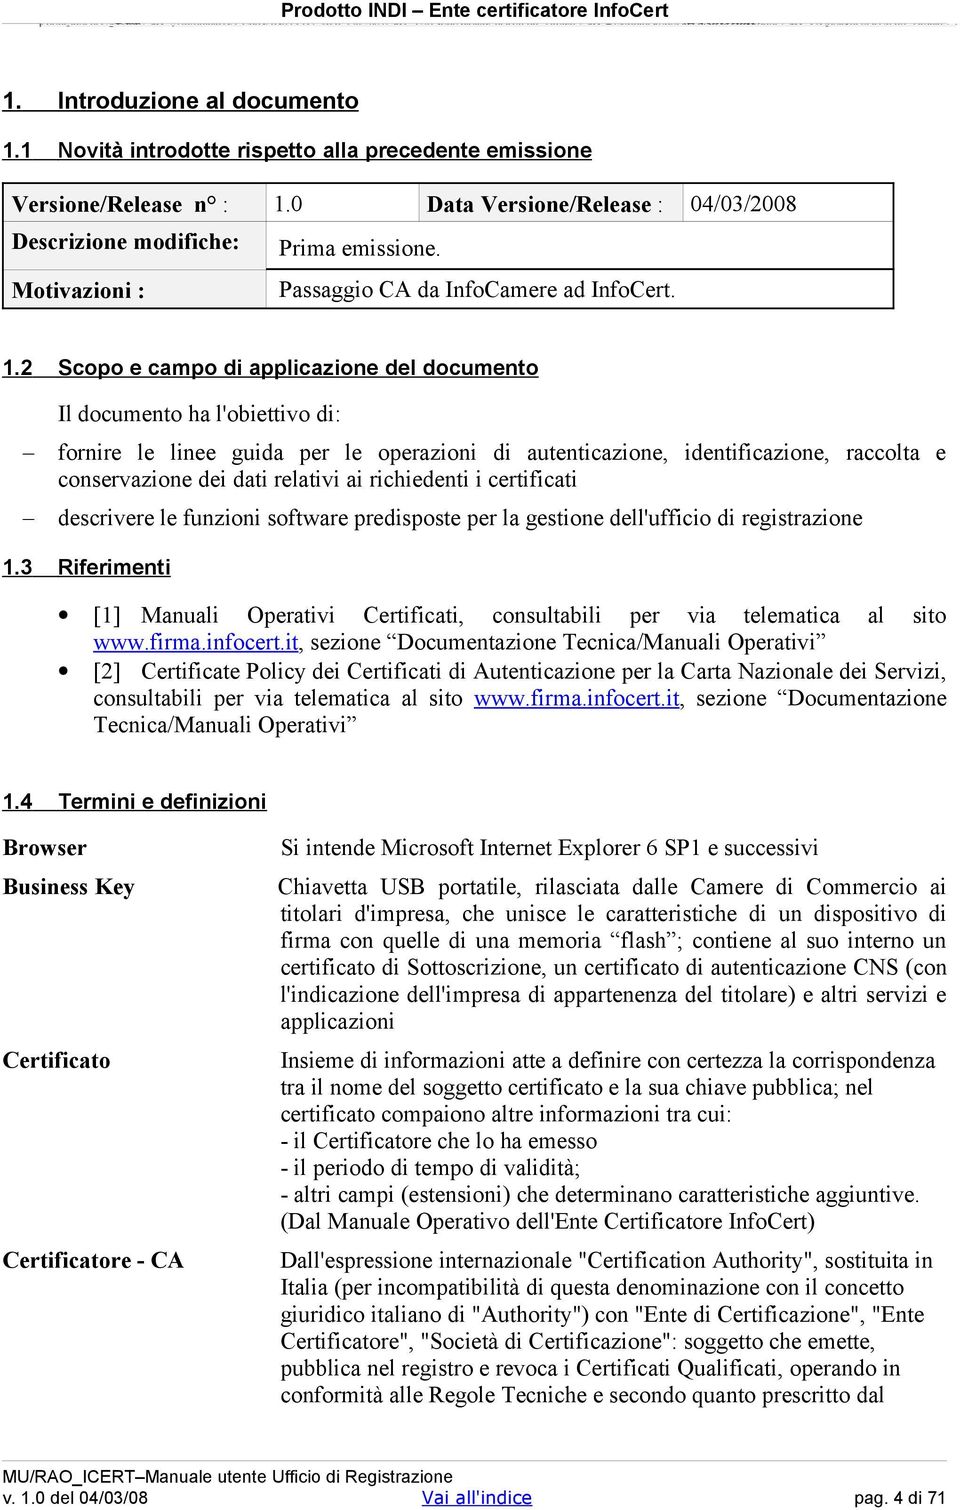 2 Data Versione/Release : 04/03/2008 Scopo e campo di applicazione del documento Il documento ha l'obiettivo di: fornire le linee guida per le operazioni di autenticazione, identificazione, raccolta